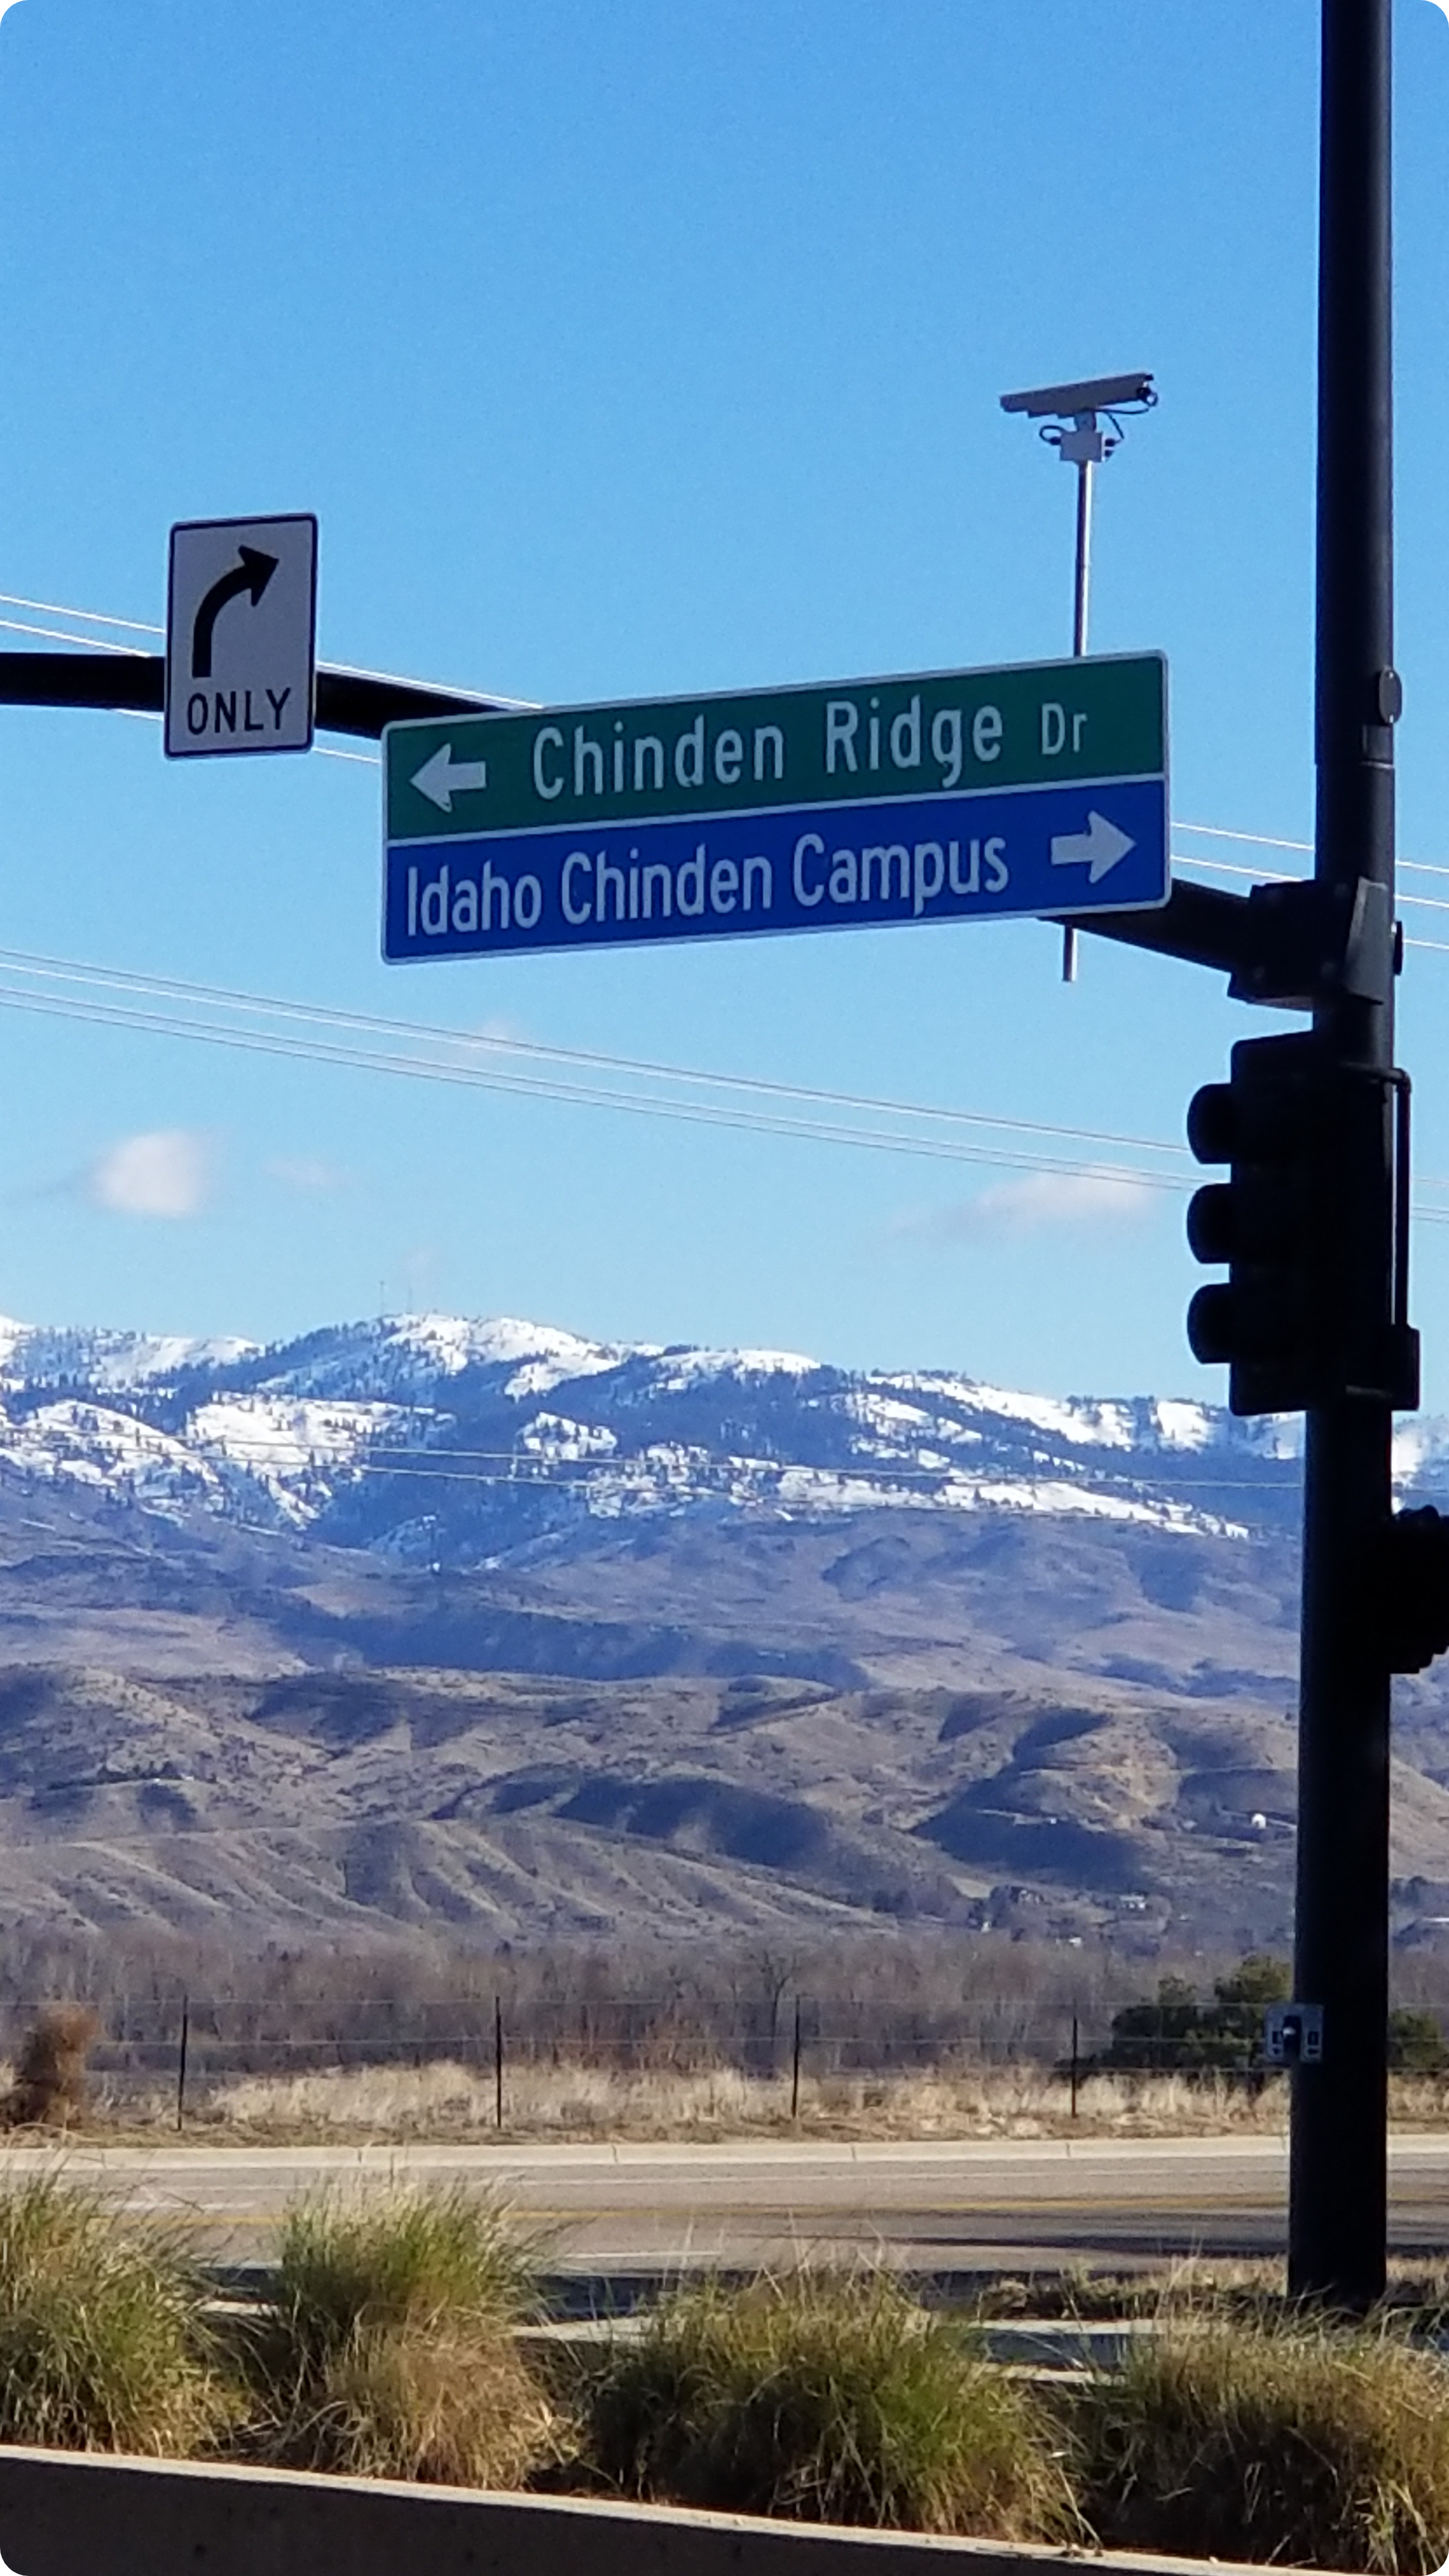 Chinden Campus street sign